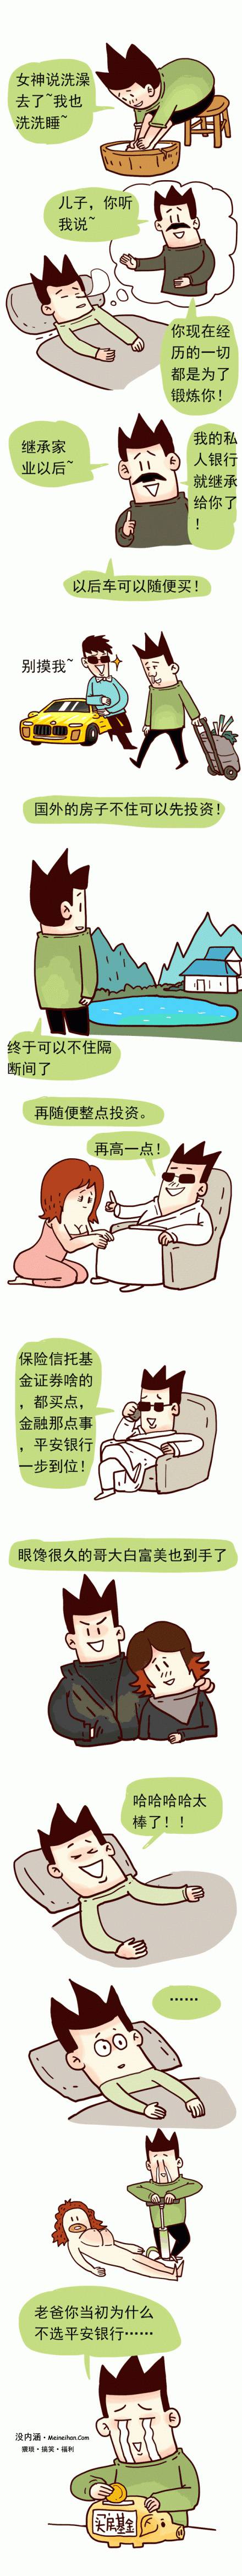 邪恶漫画爆笑囧图第158刊：惩罚